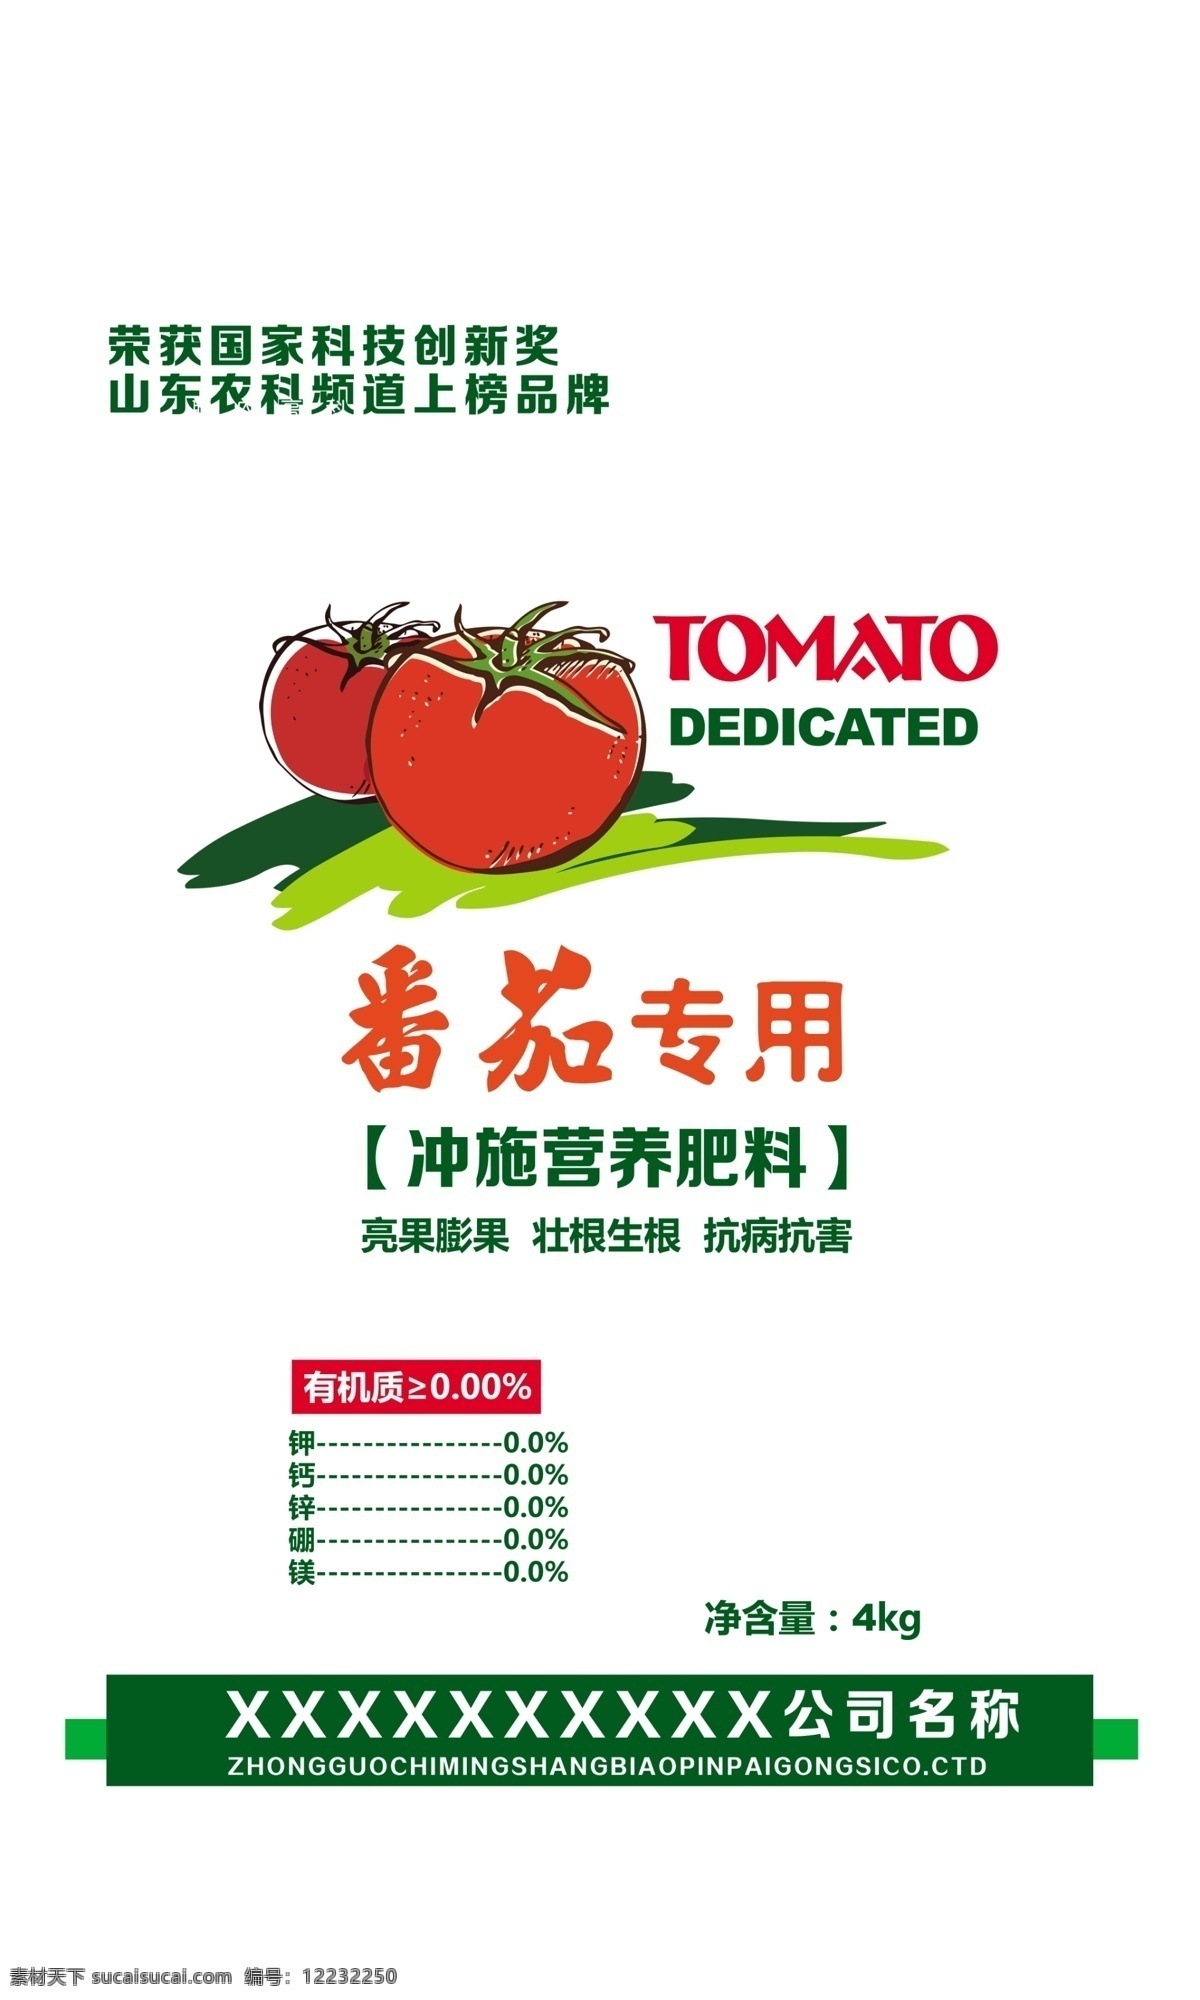 番茄 专用 施肥 番茄专用 冲施肥 化肥包装设计 包装设计 广告设计模板 源文件